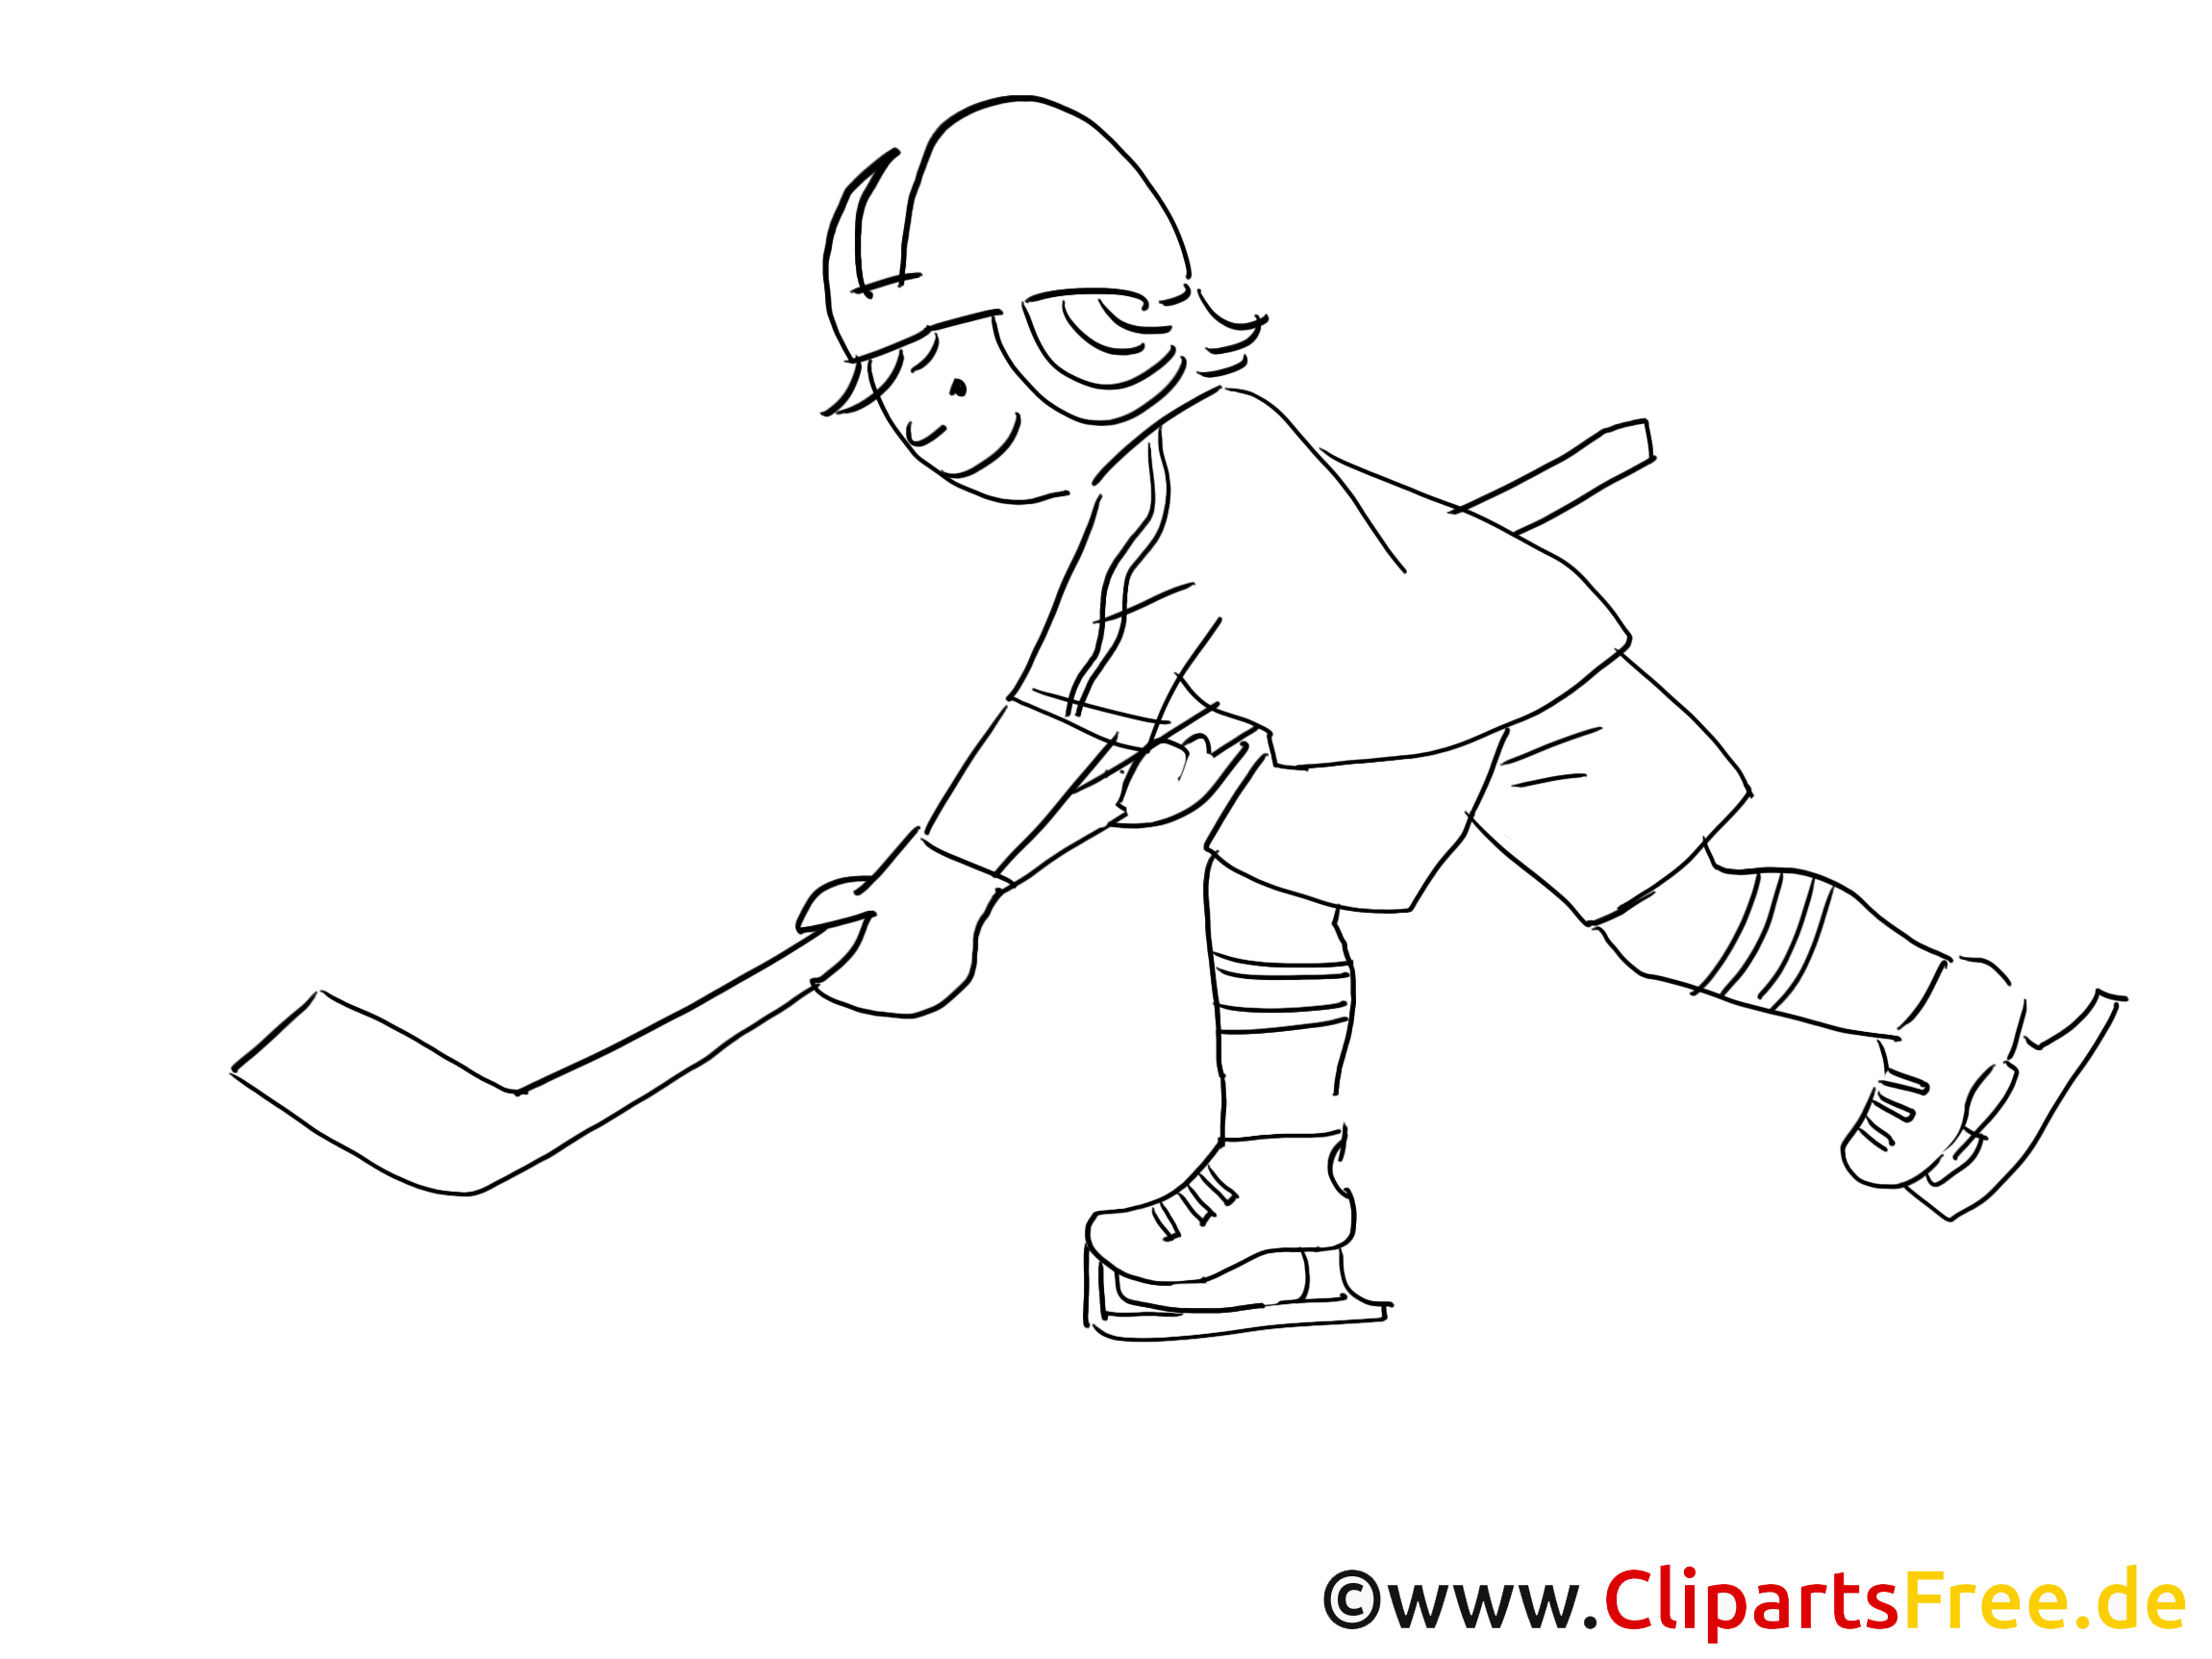 Sport d'hiver image gratuite – Hockey à colorier